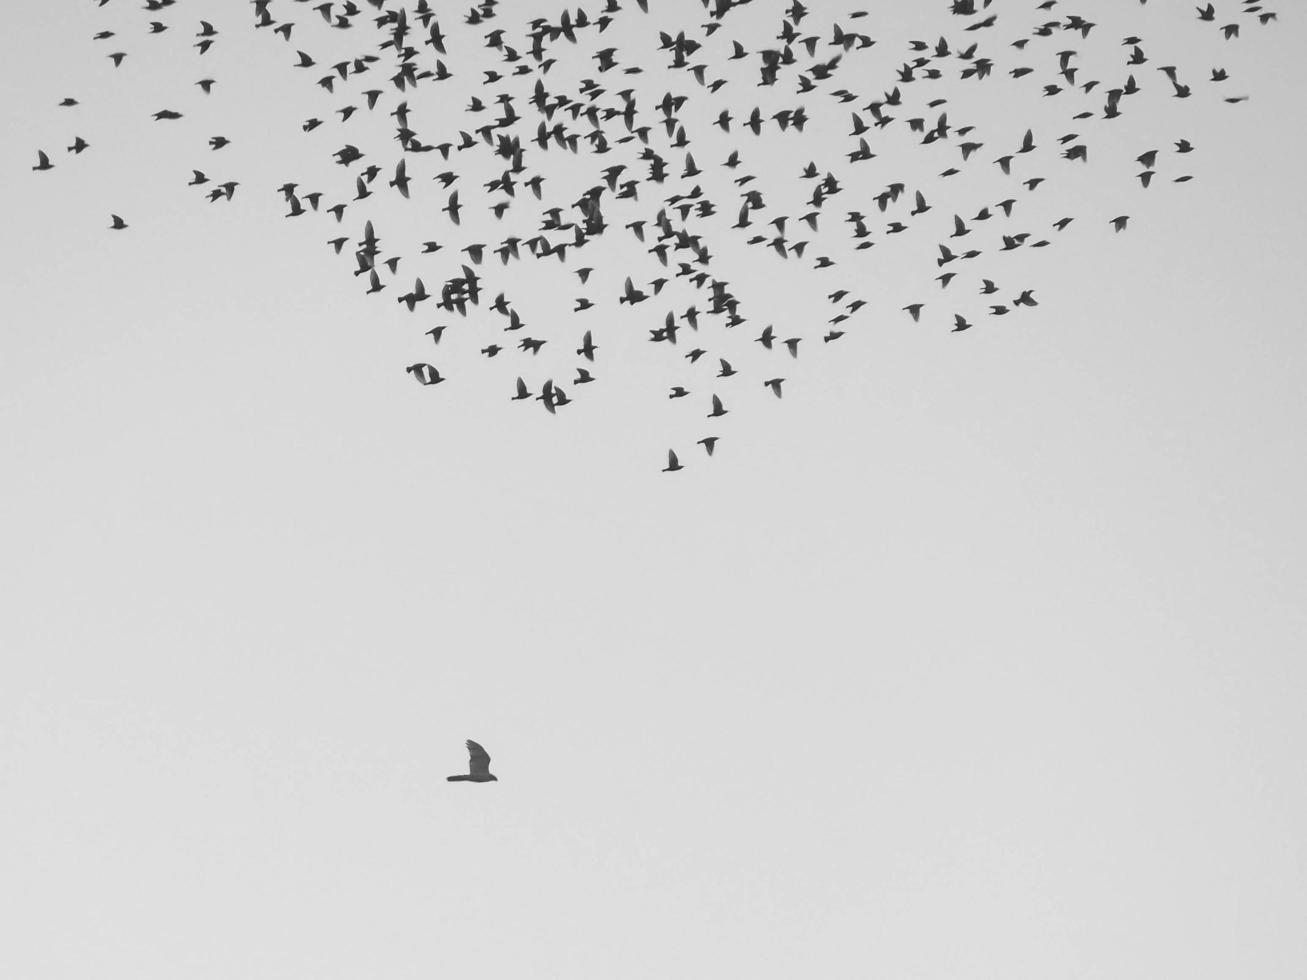 bando de pássaros voando durante o dia foto